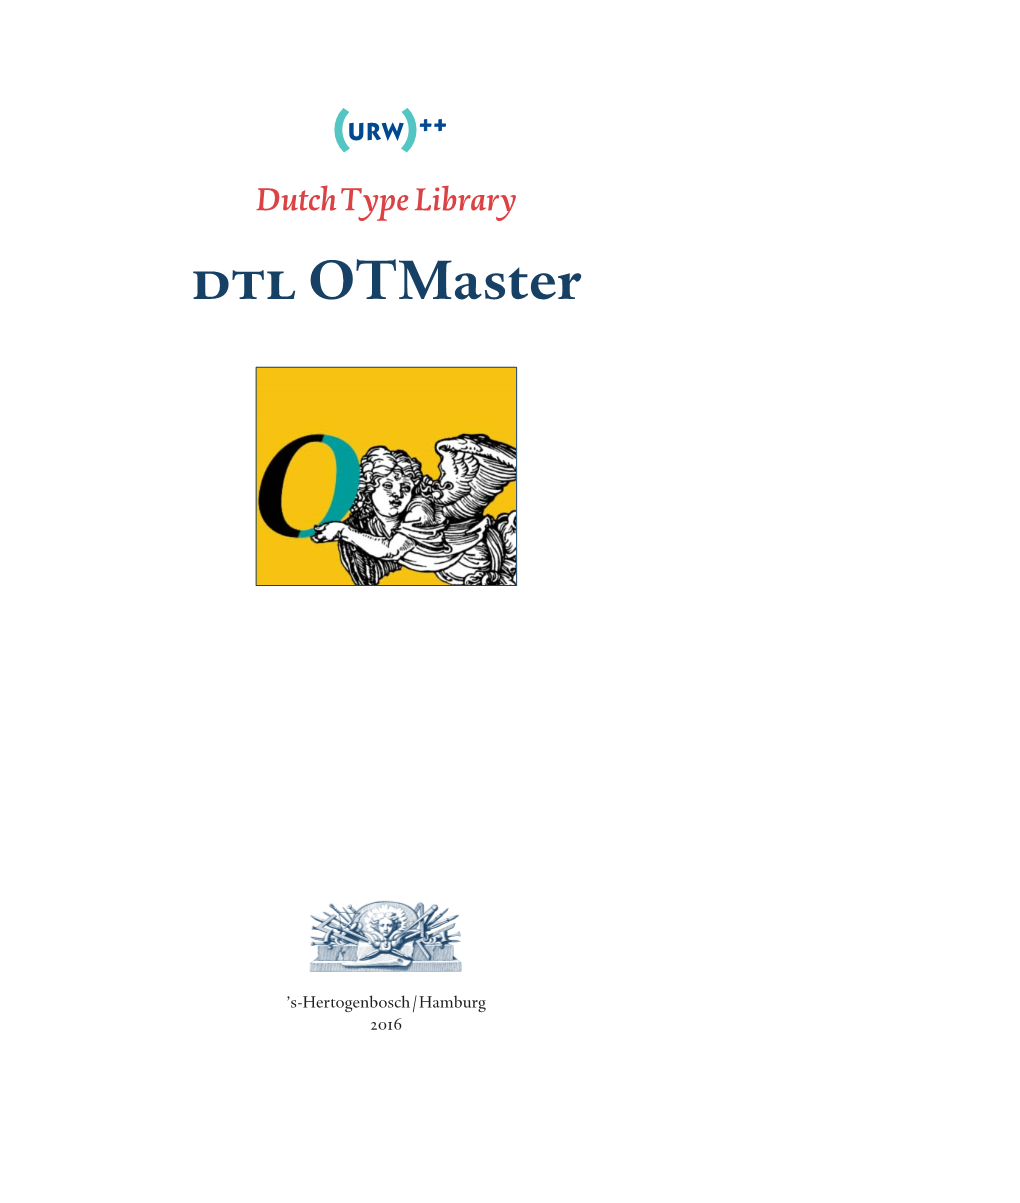 DTL Otmaster Manual